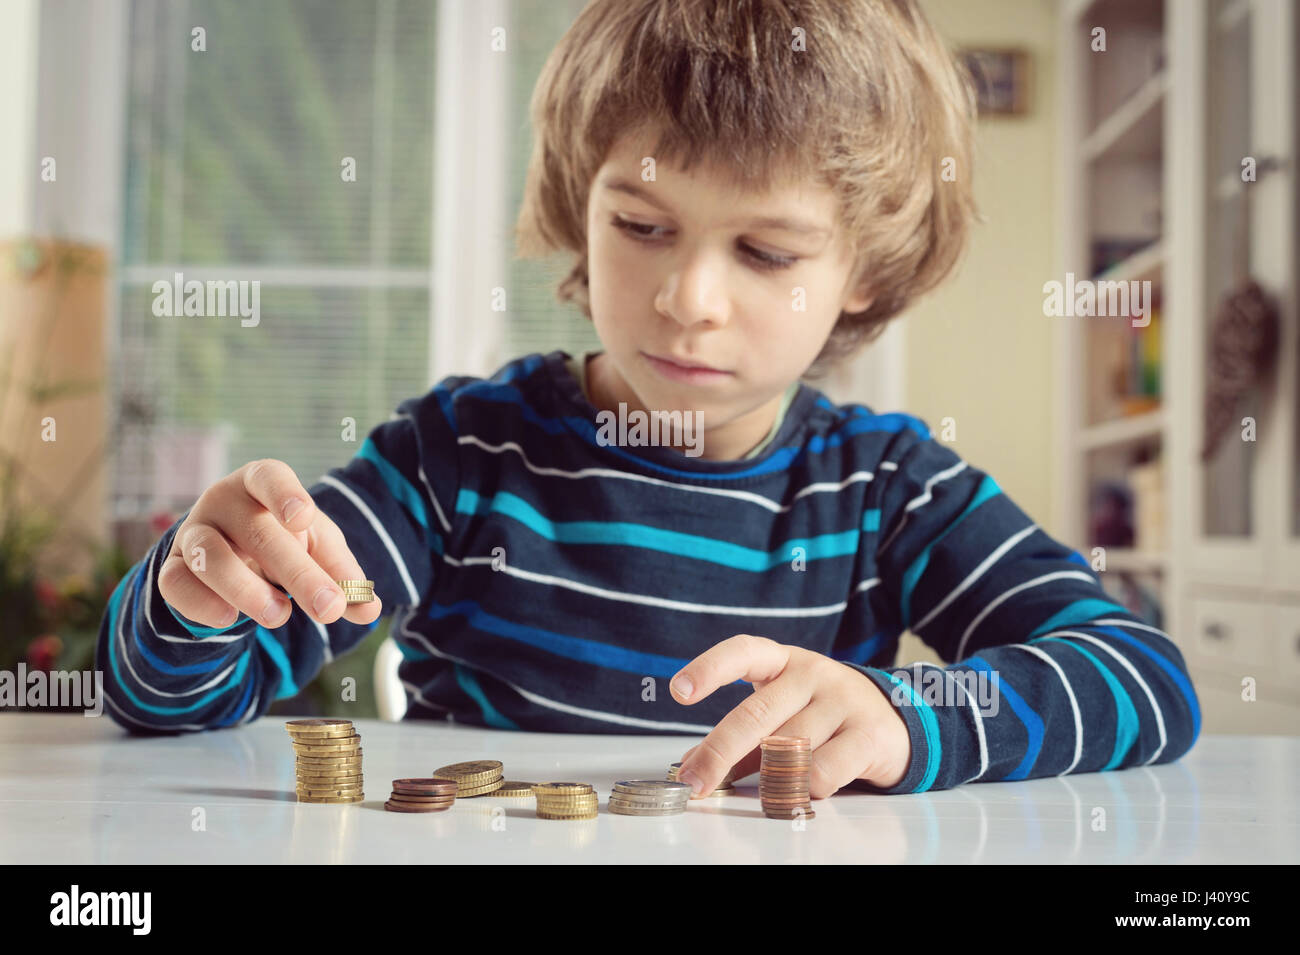 Kleiner Junge spielt mit Münzen machen Stapel. Lernen Finanncial Verantwortung und Planung Einsparungen Konzept. Stockfoto